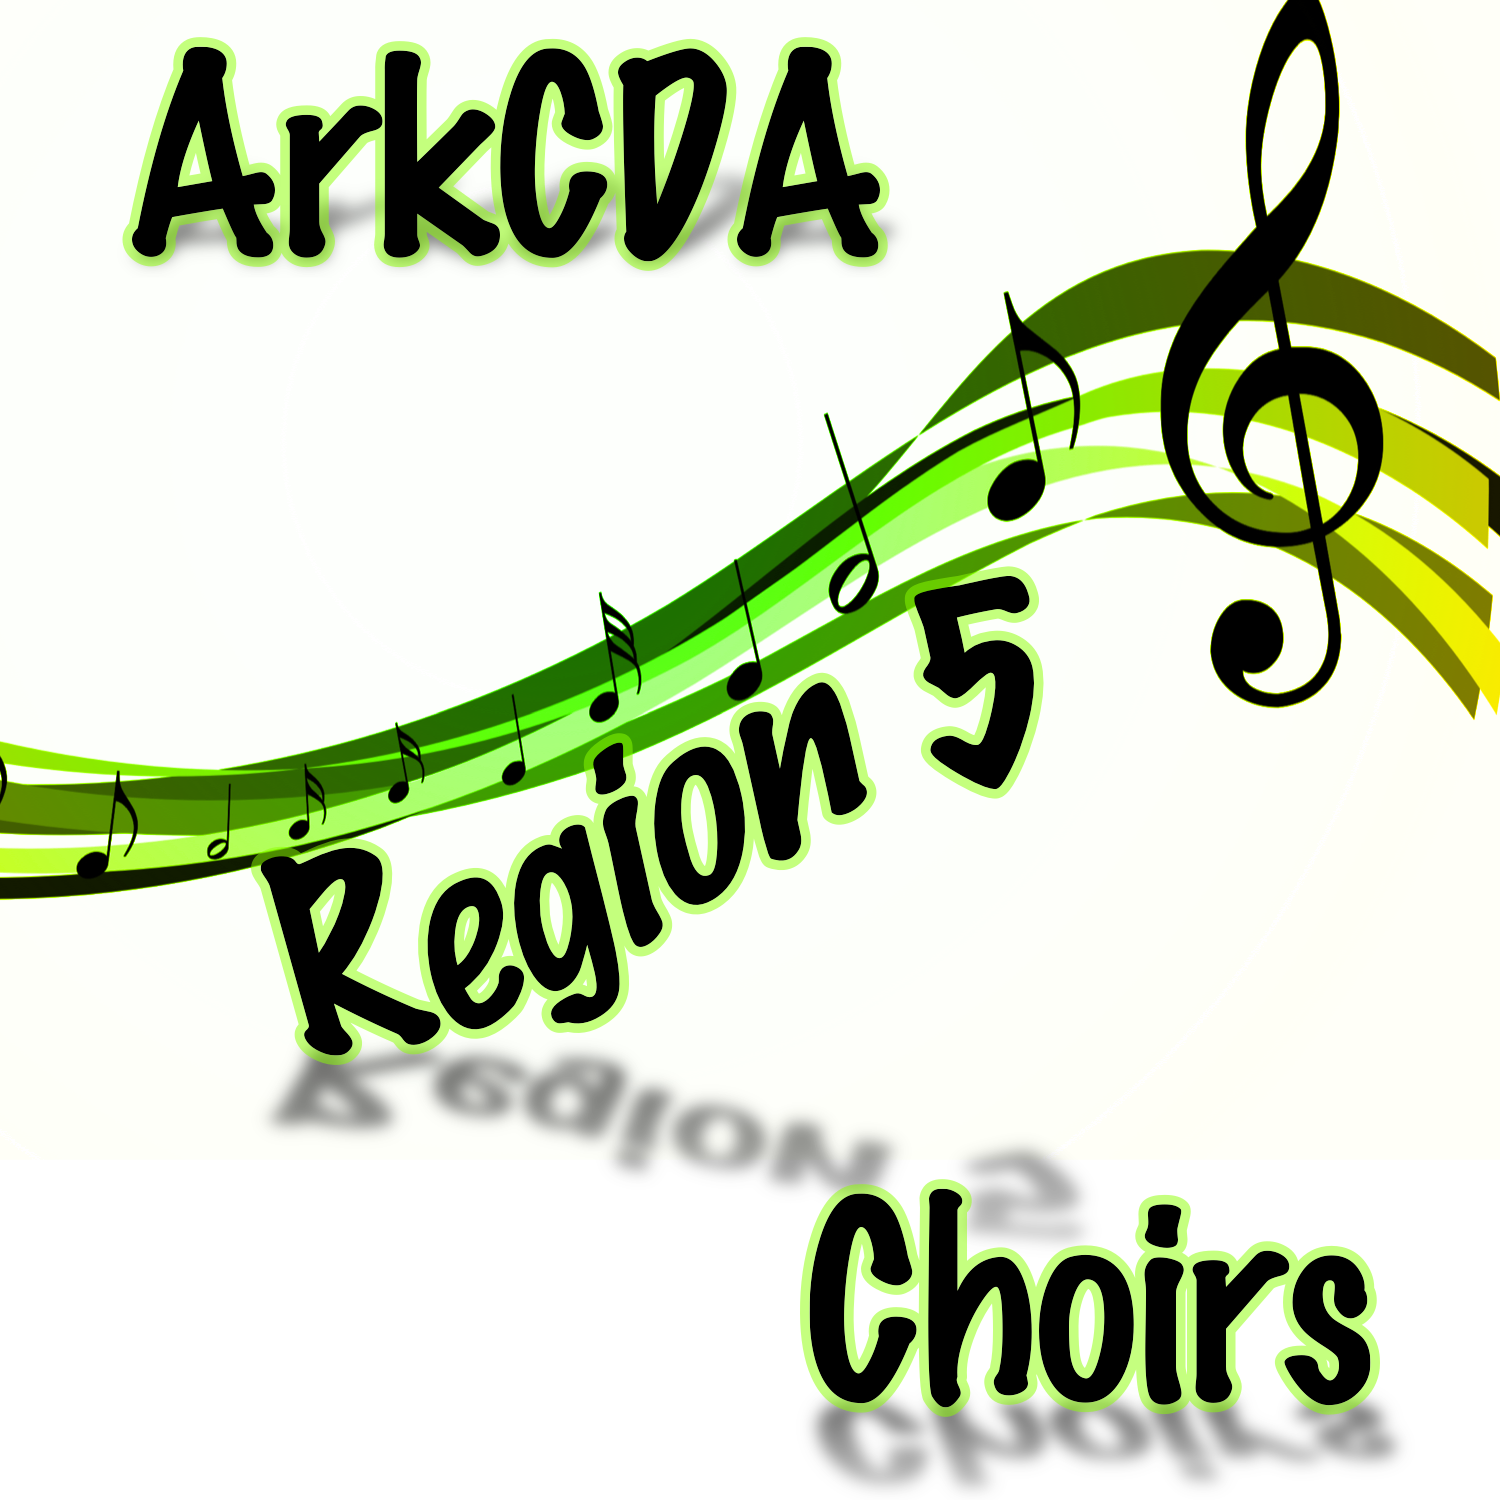 ArkCDA Region 5 All-Region Choirs